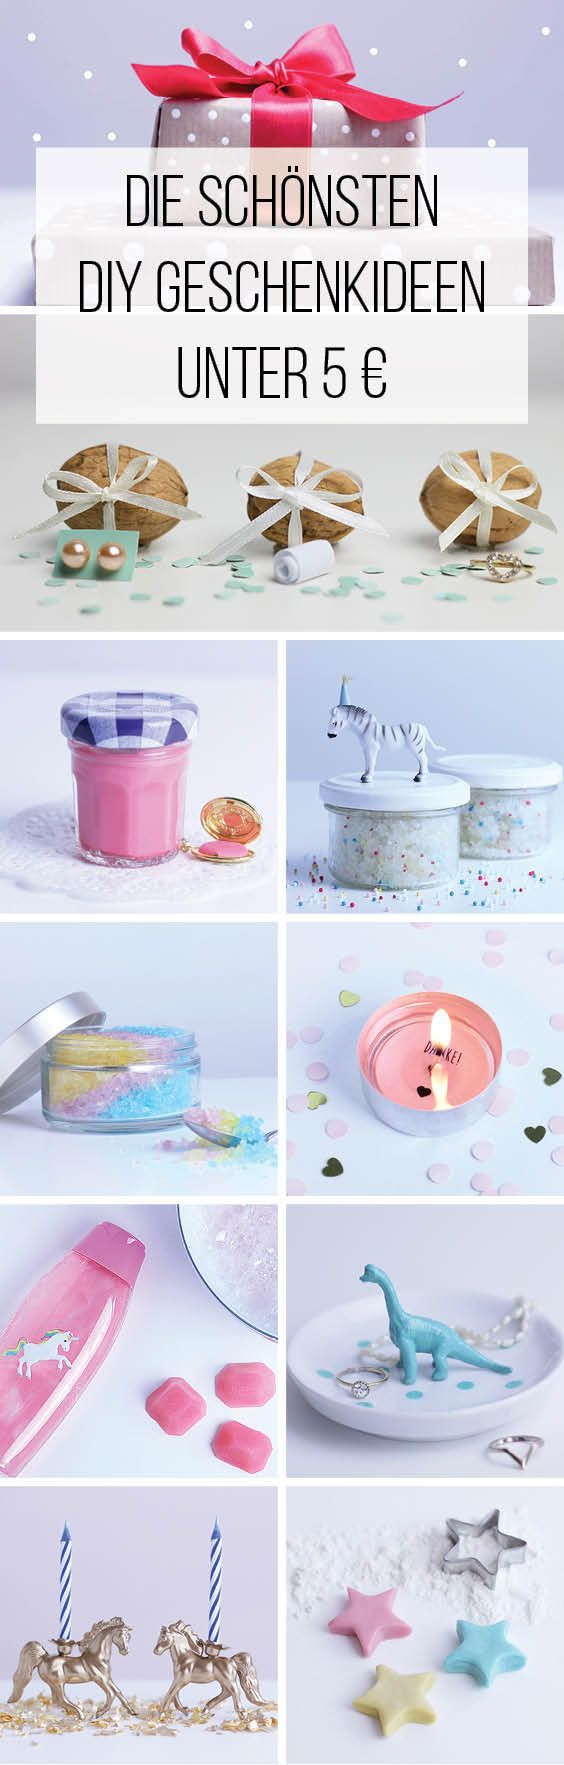 Geschenke Für Tante
 Die 25 besten Ideen zu Tante Geschenke auf Pinterest